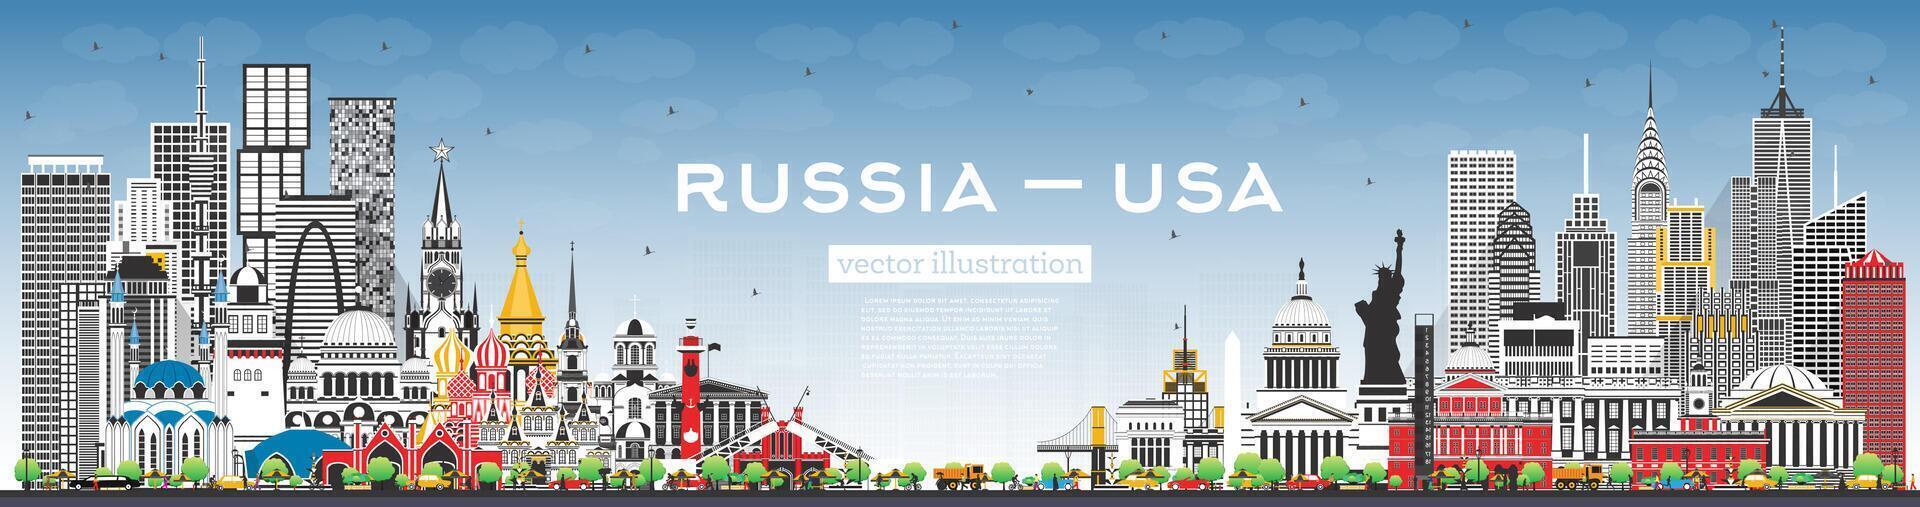 Rússia e EUA Horizonte com cinzento edifícios e azul céu. famoso pontos de referência. EUA e Rússia conceito. diplomático relações entre países. vetor